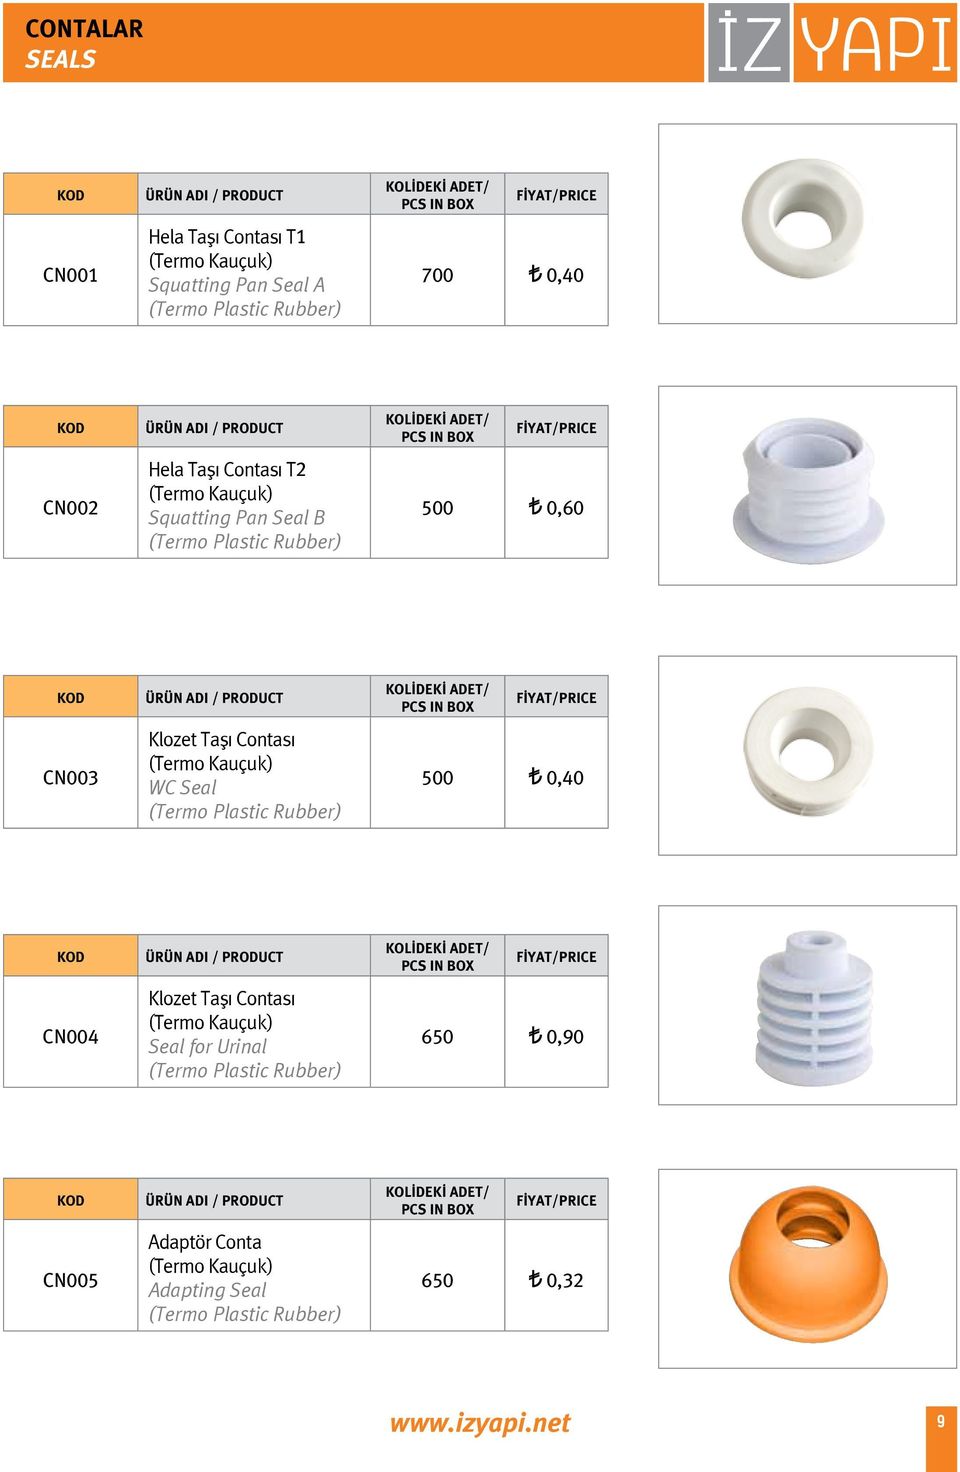 (Termo Kauçuk) WC Seal (Termo Plastic Rubber) 500 0,40 CN004 Klozet Taşı Contası (Termo Kauçuk) Seal for Urinal